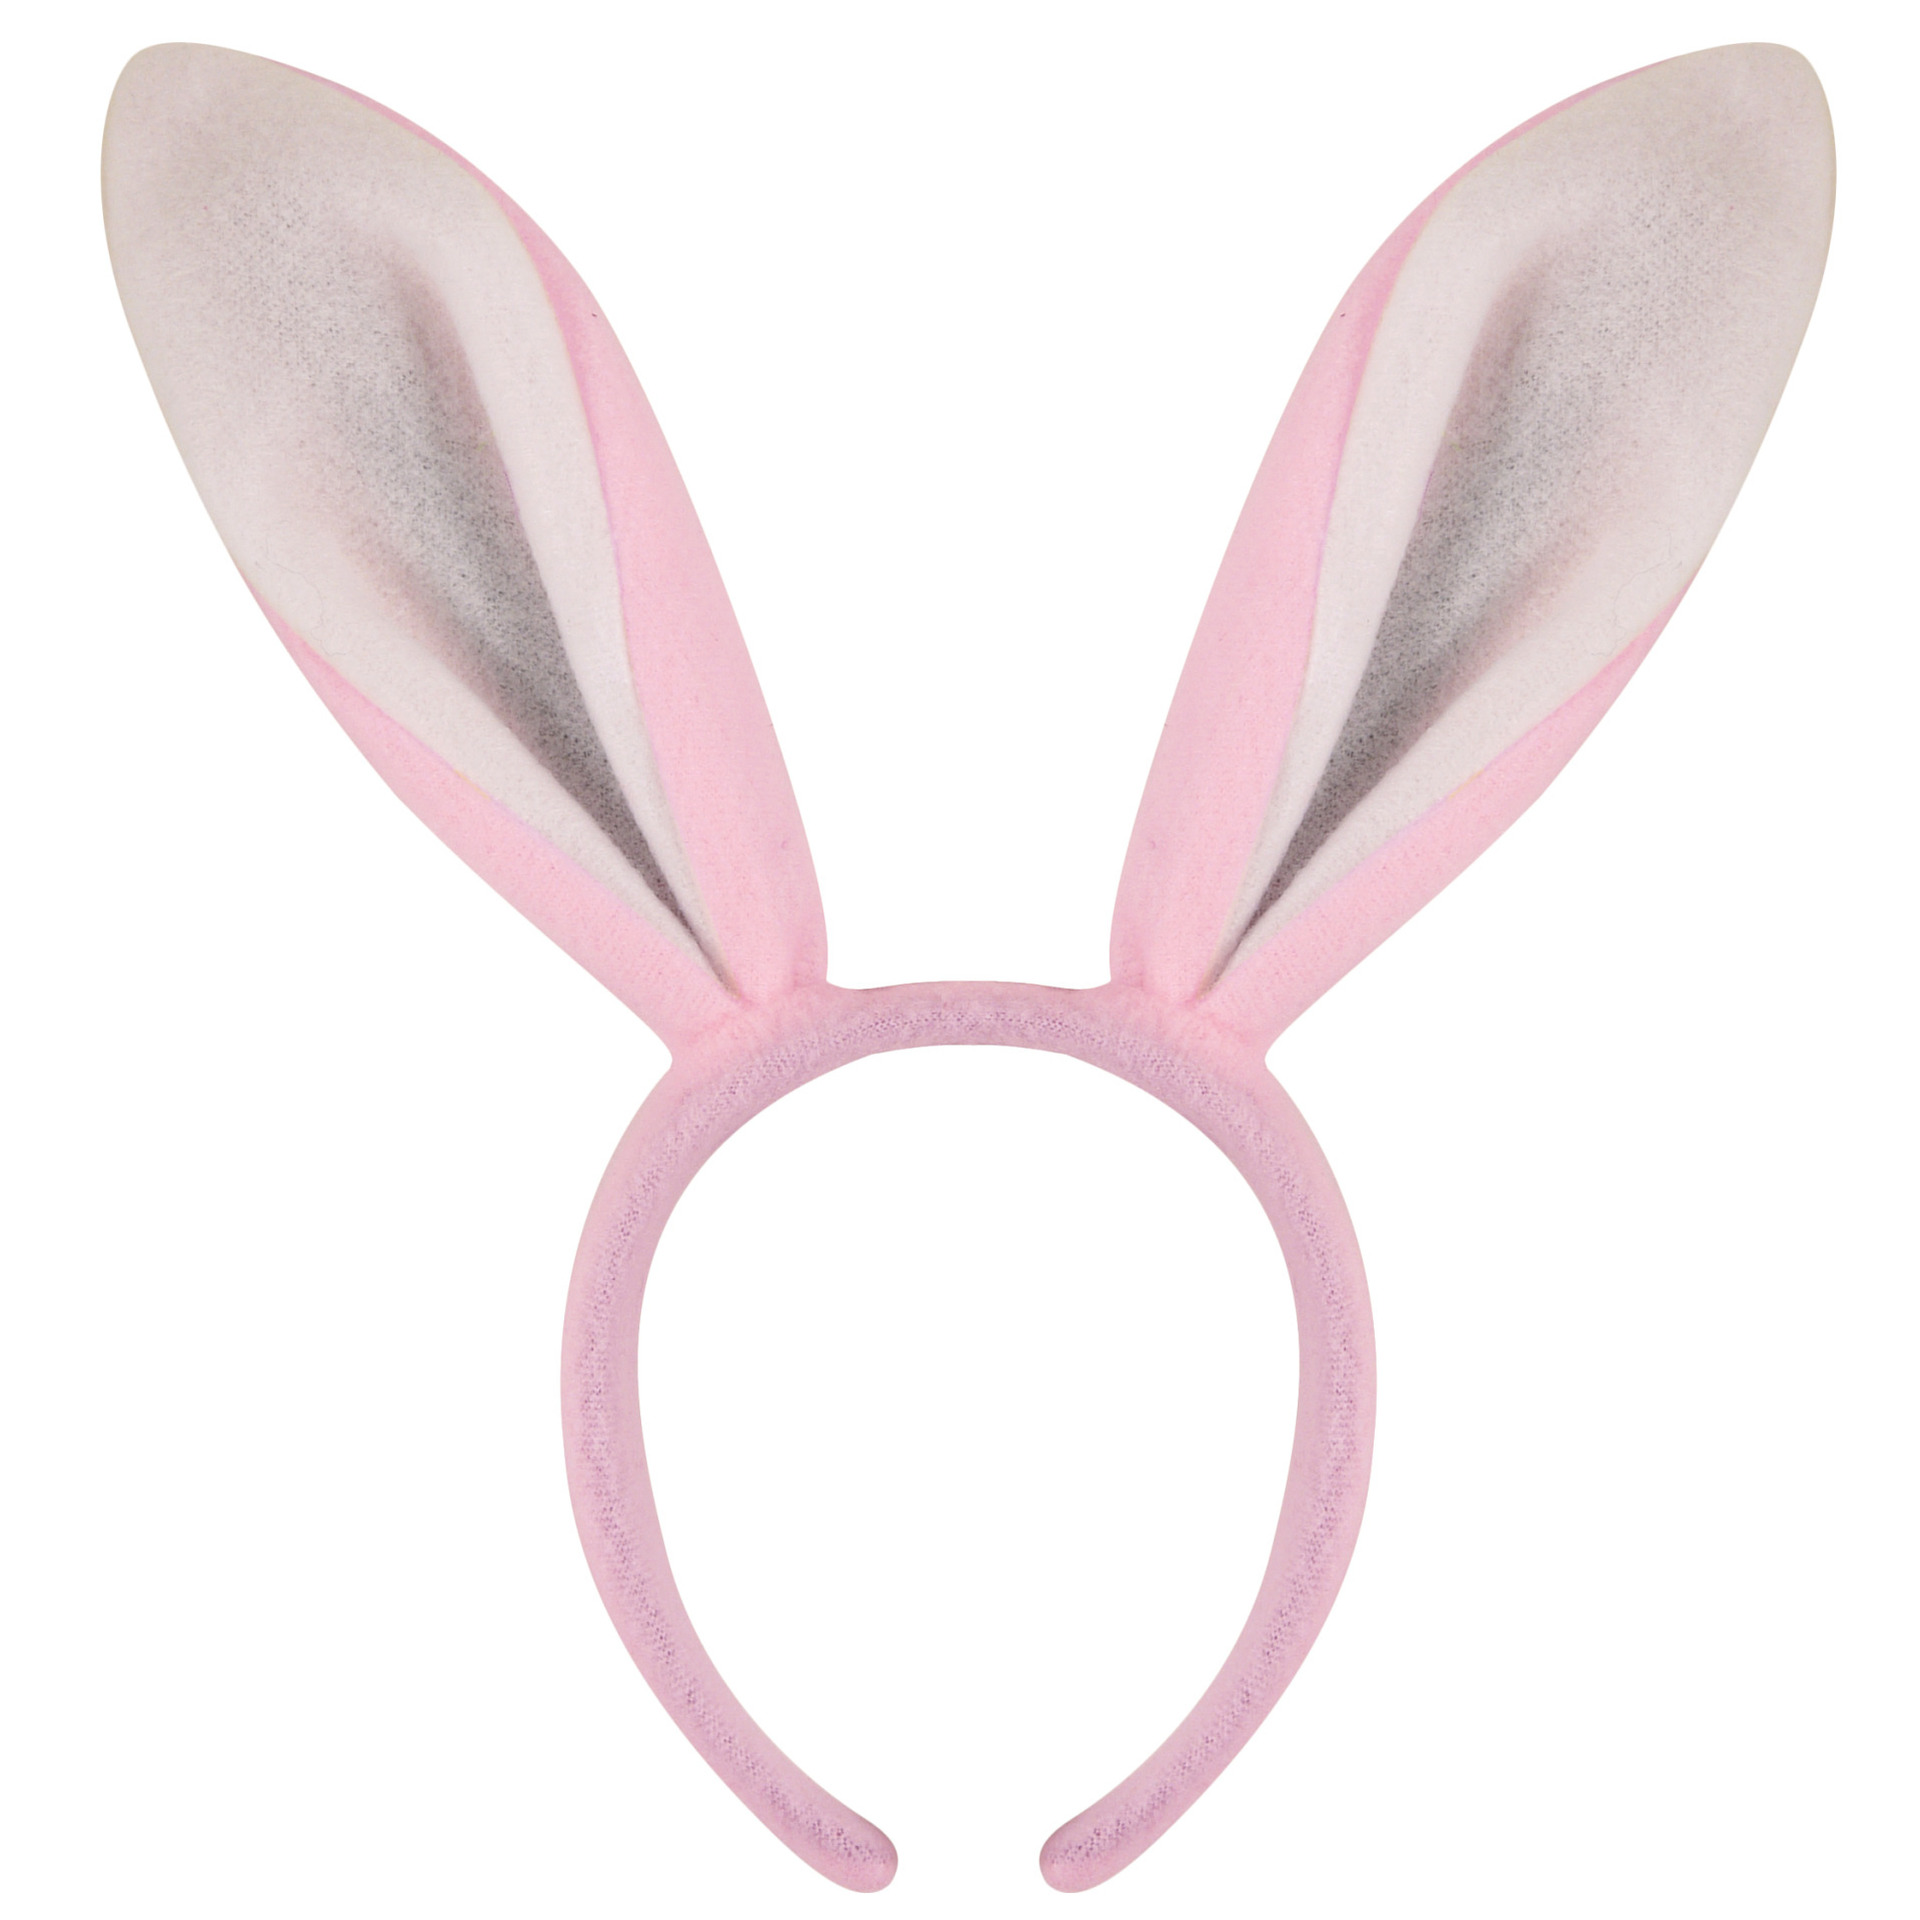 Konijnen/bunny oren roze met wit voor volwassenen 27 x 28 cm -